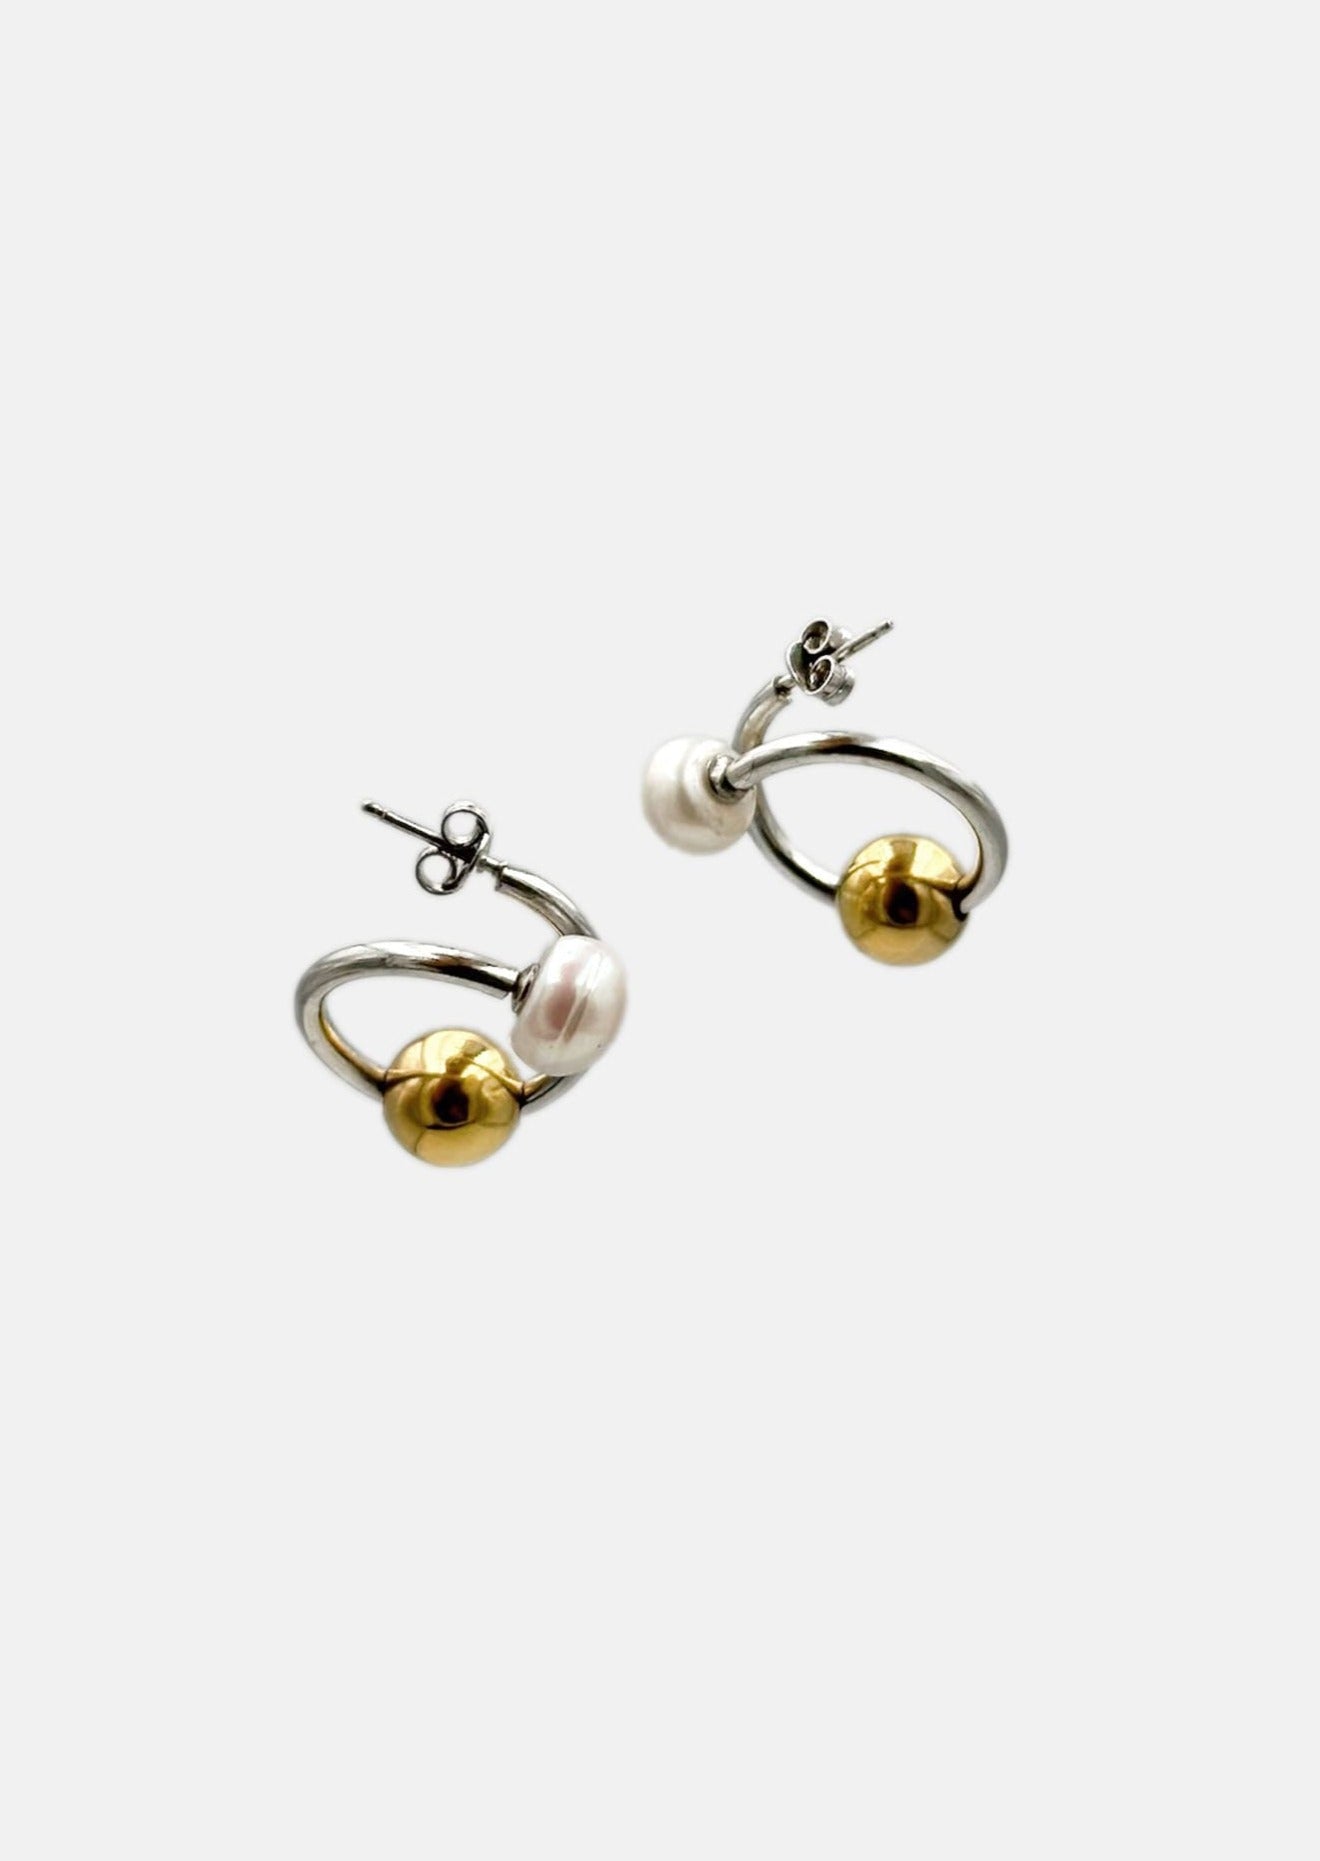 Boucle d'oreille - Spirales argent sterling 925, perle or 24 carat et perle d'eau douce